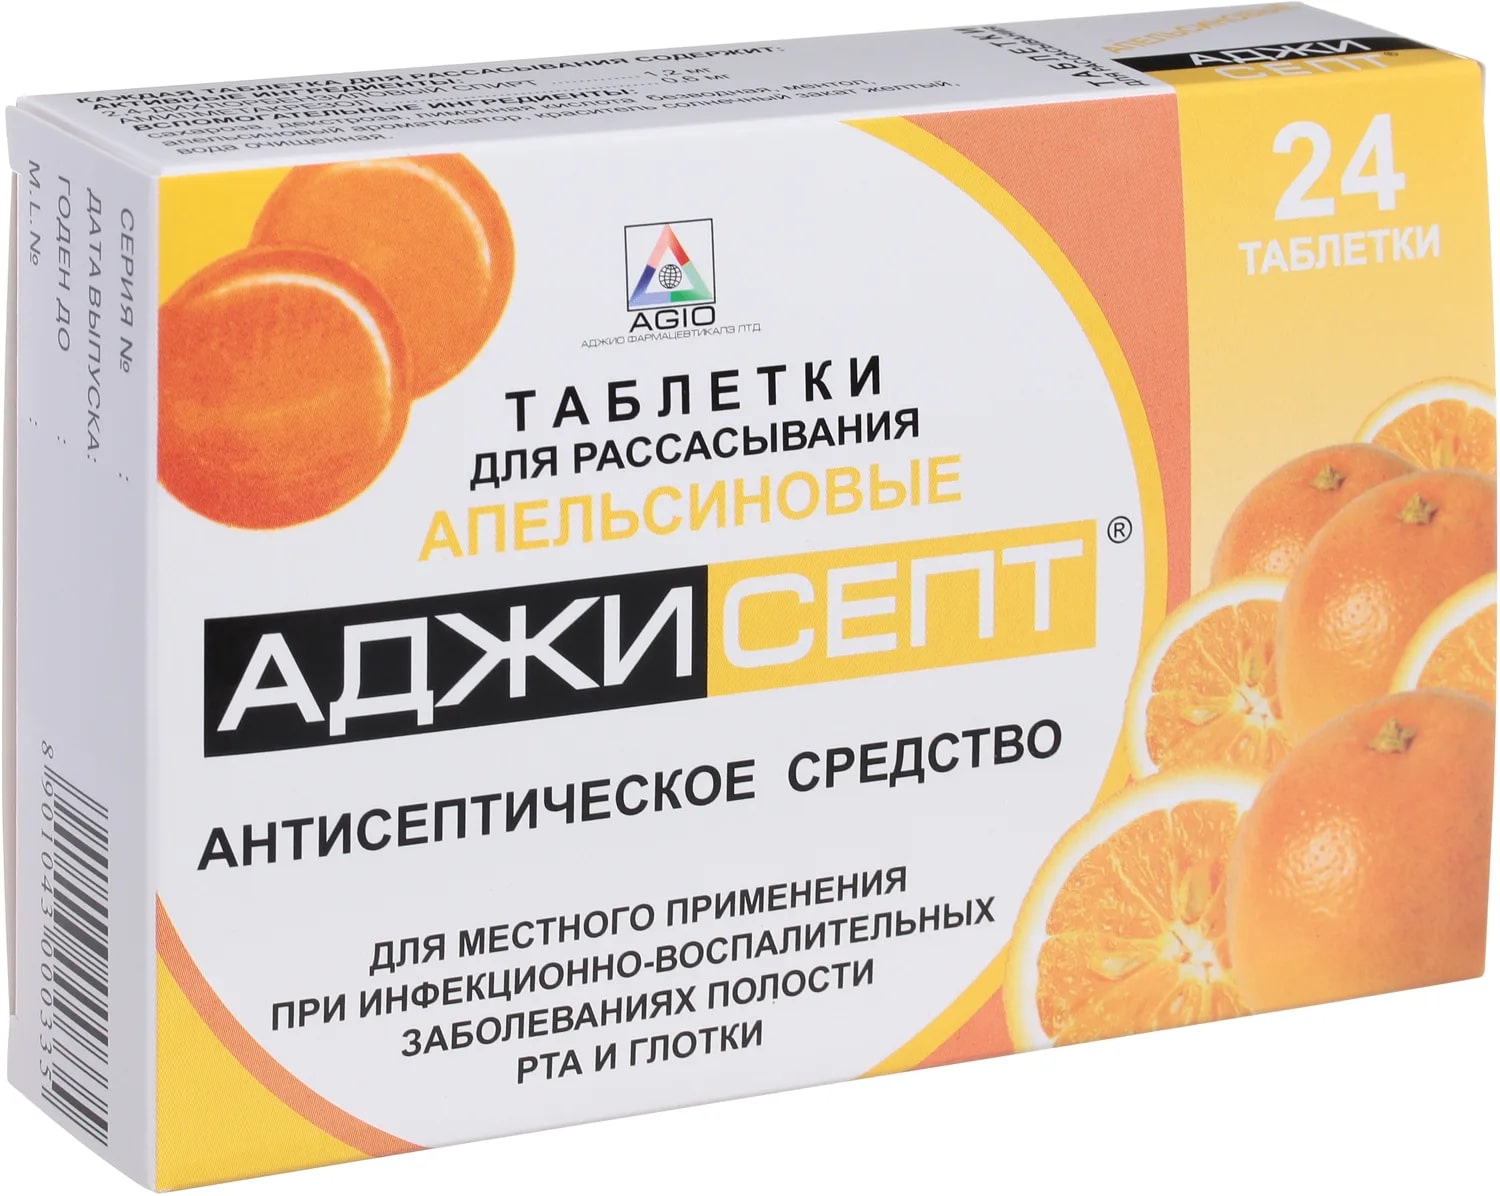 Аджисепт, таблетки для рассасывания (апельсин), 24 шт.